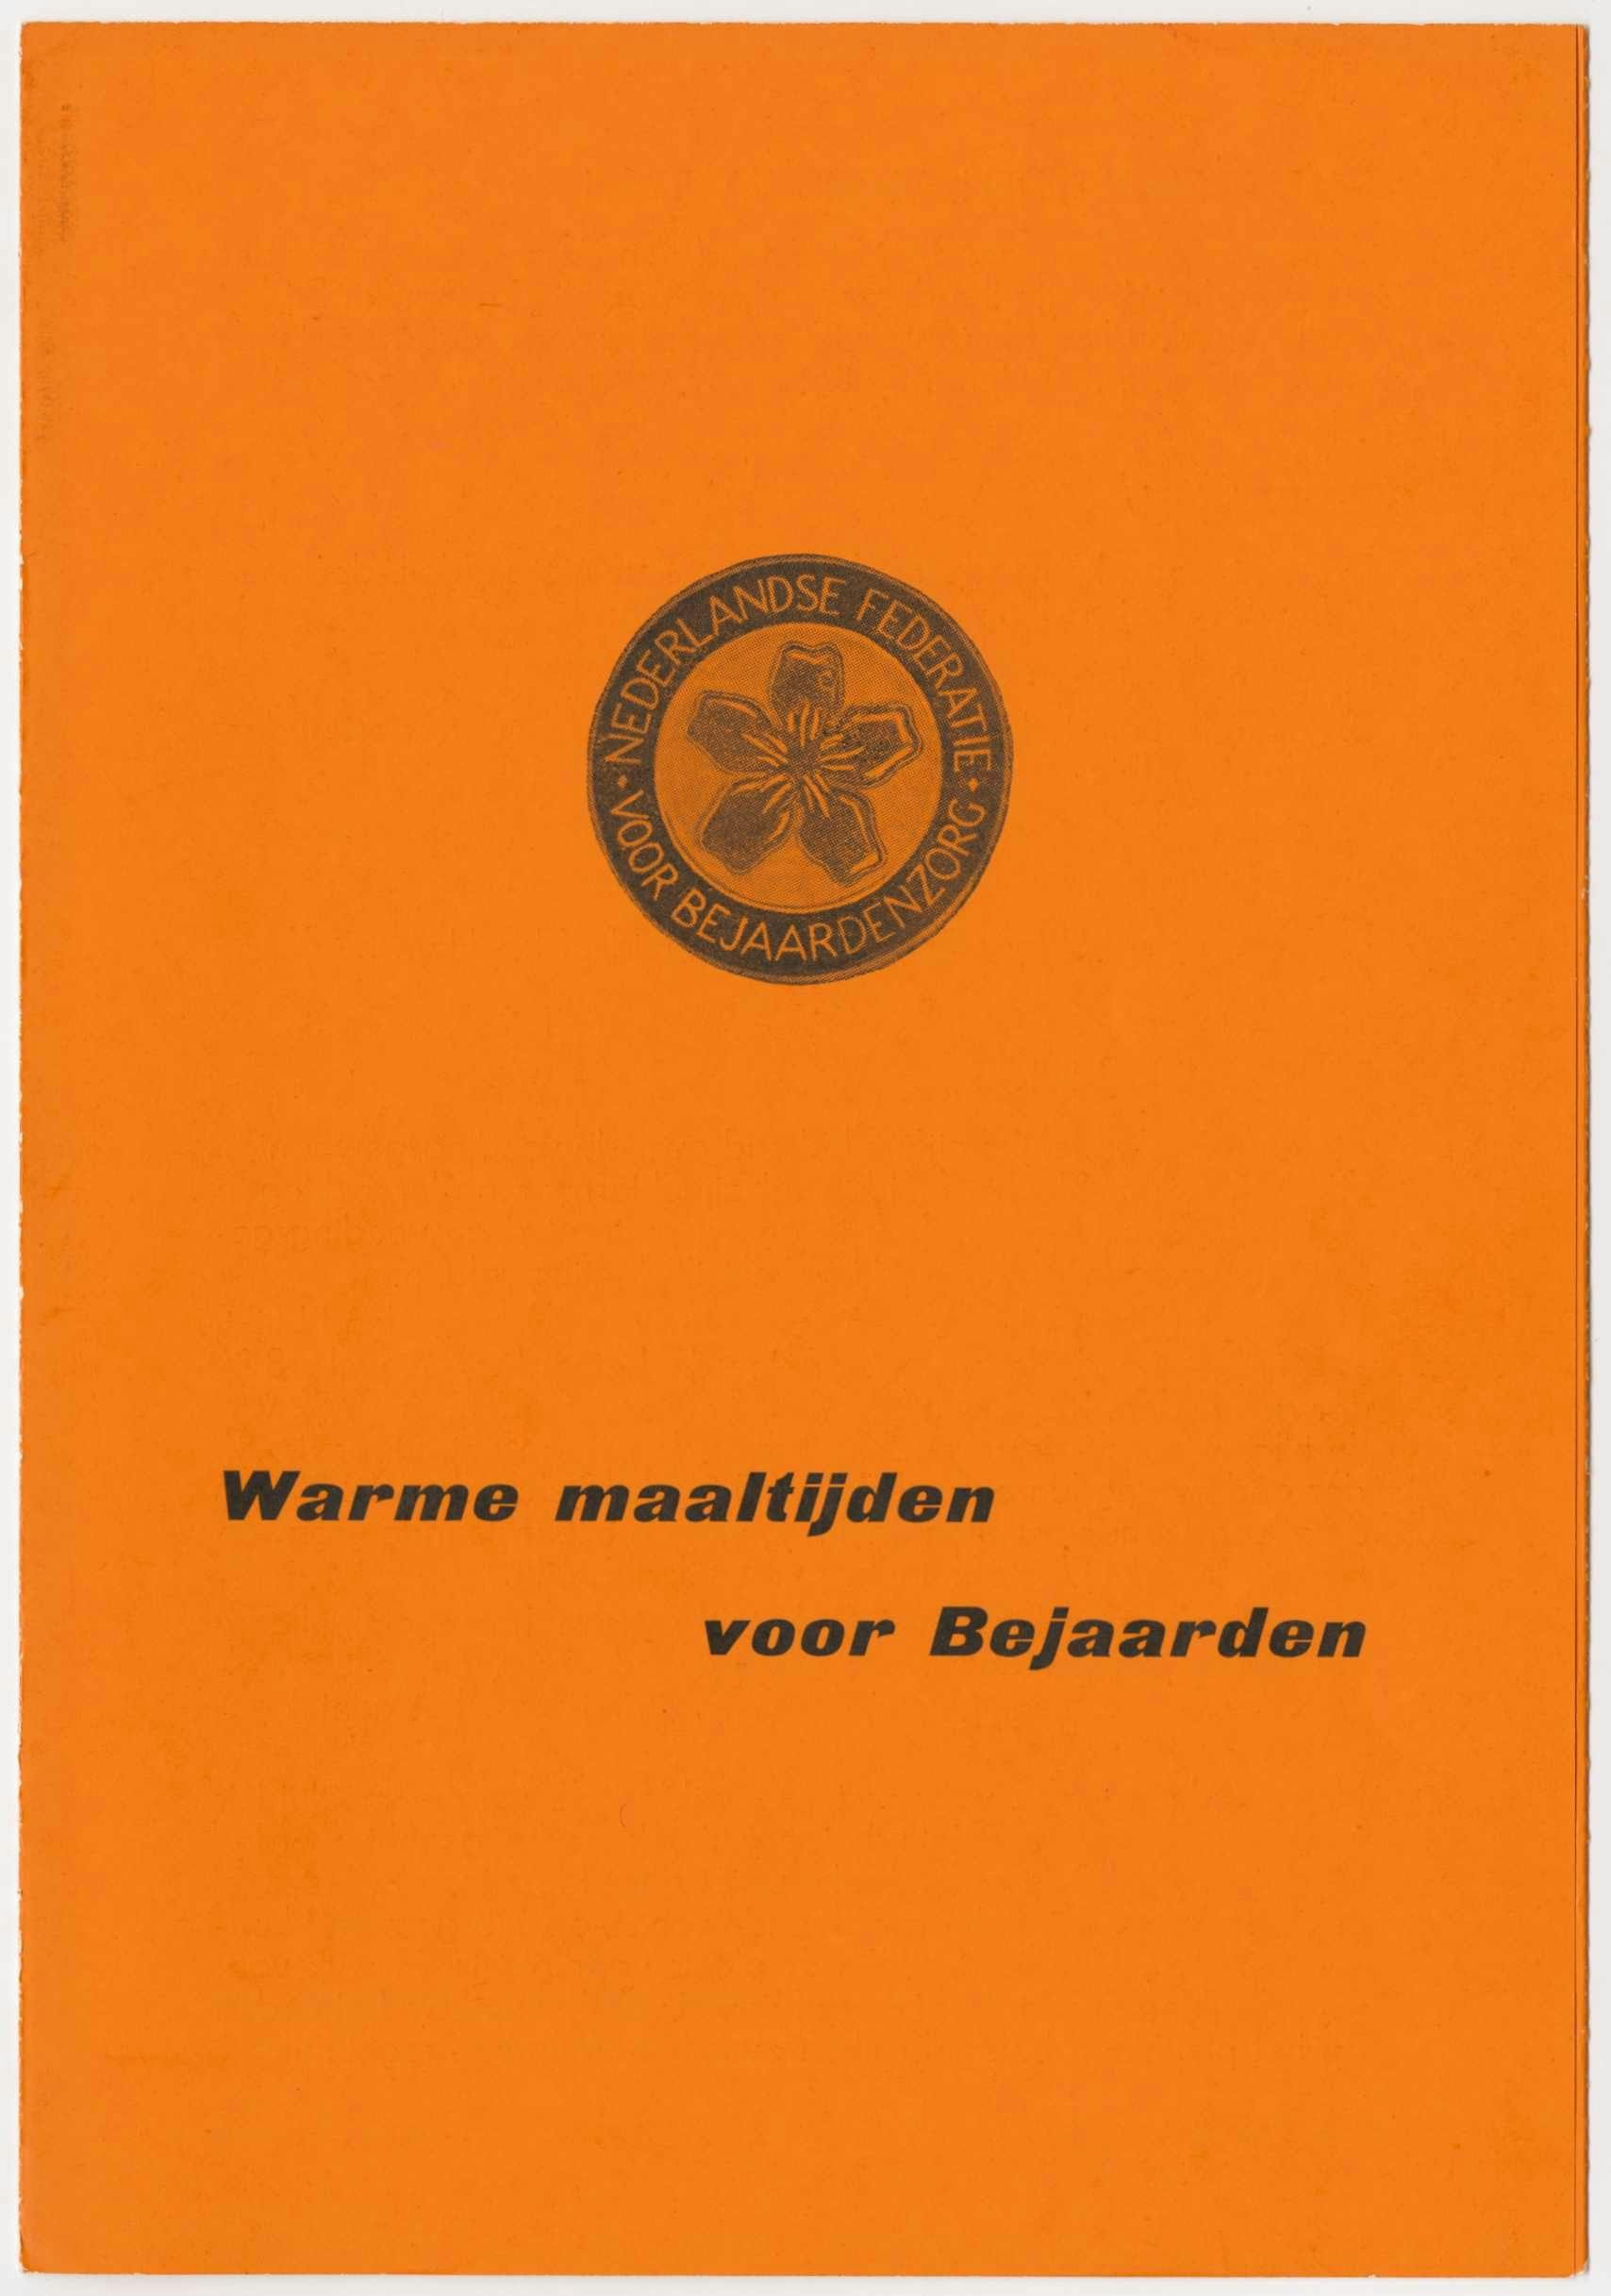 Nederlandse Federatie voor Bejaardenzorg , Warme maaltijden voor bejaarden, ca. 1965. Collectie Het Nieuwe Instituut, POTK d109-2